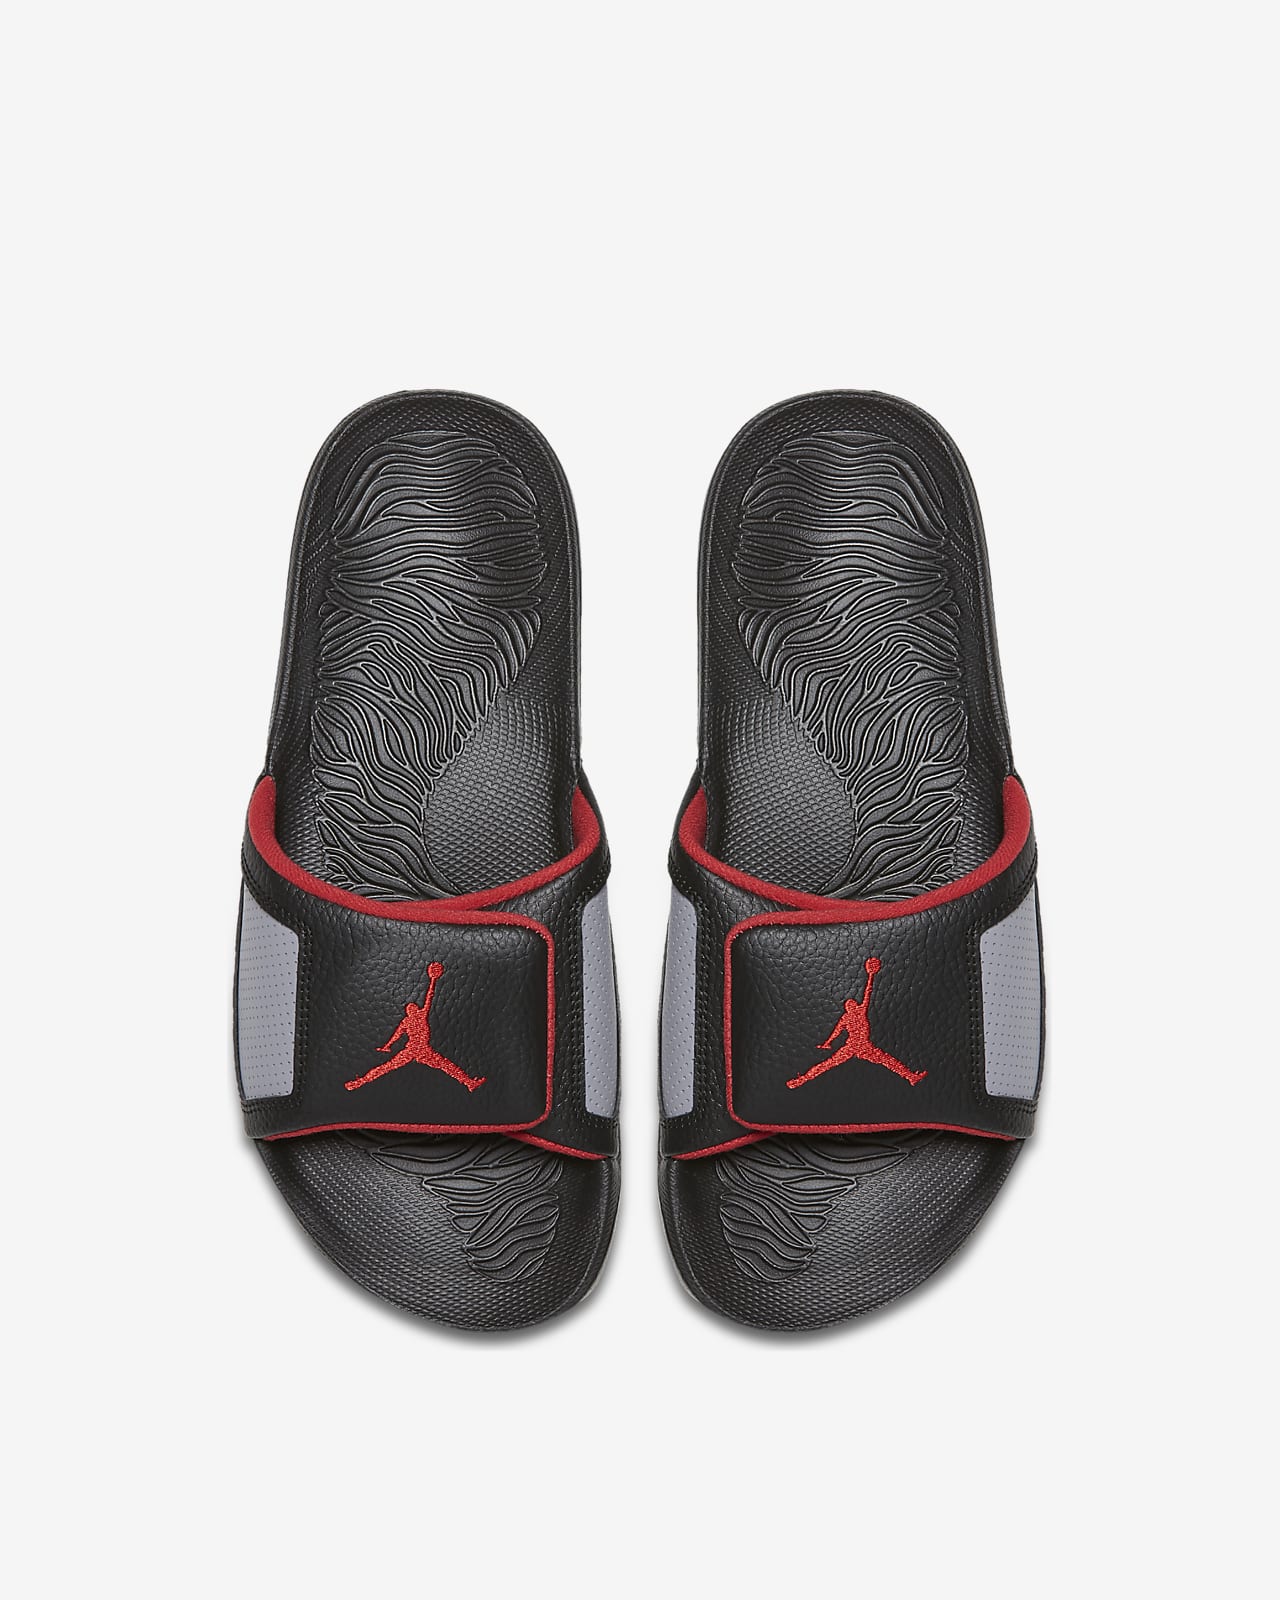 Jordan Hydro III Retro 男款拖鞋。Nike TW